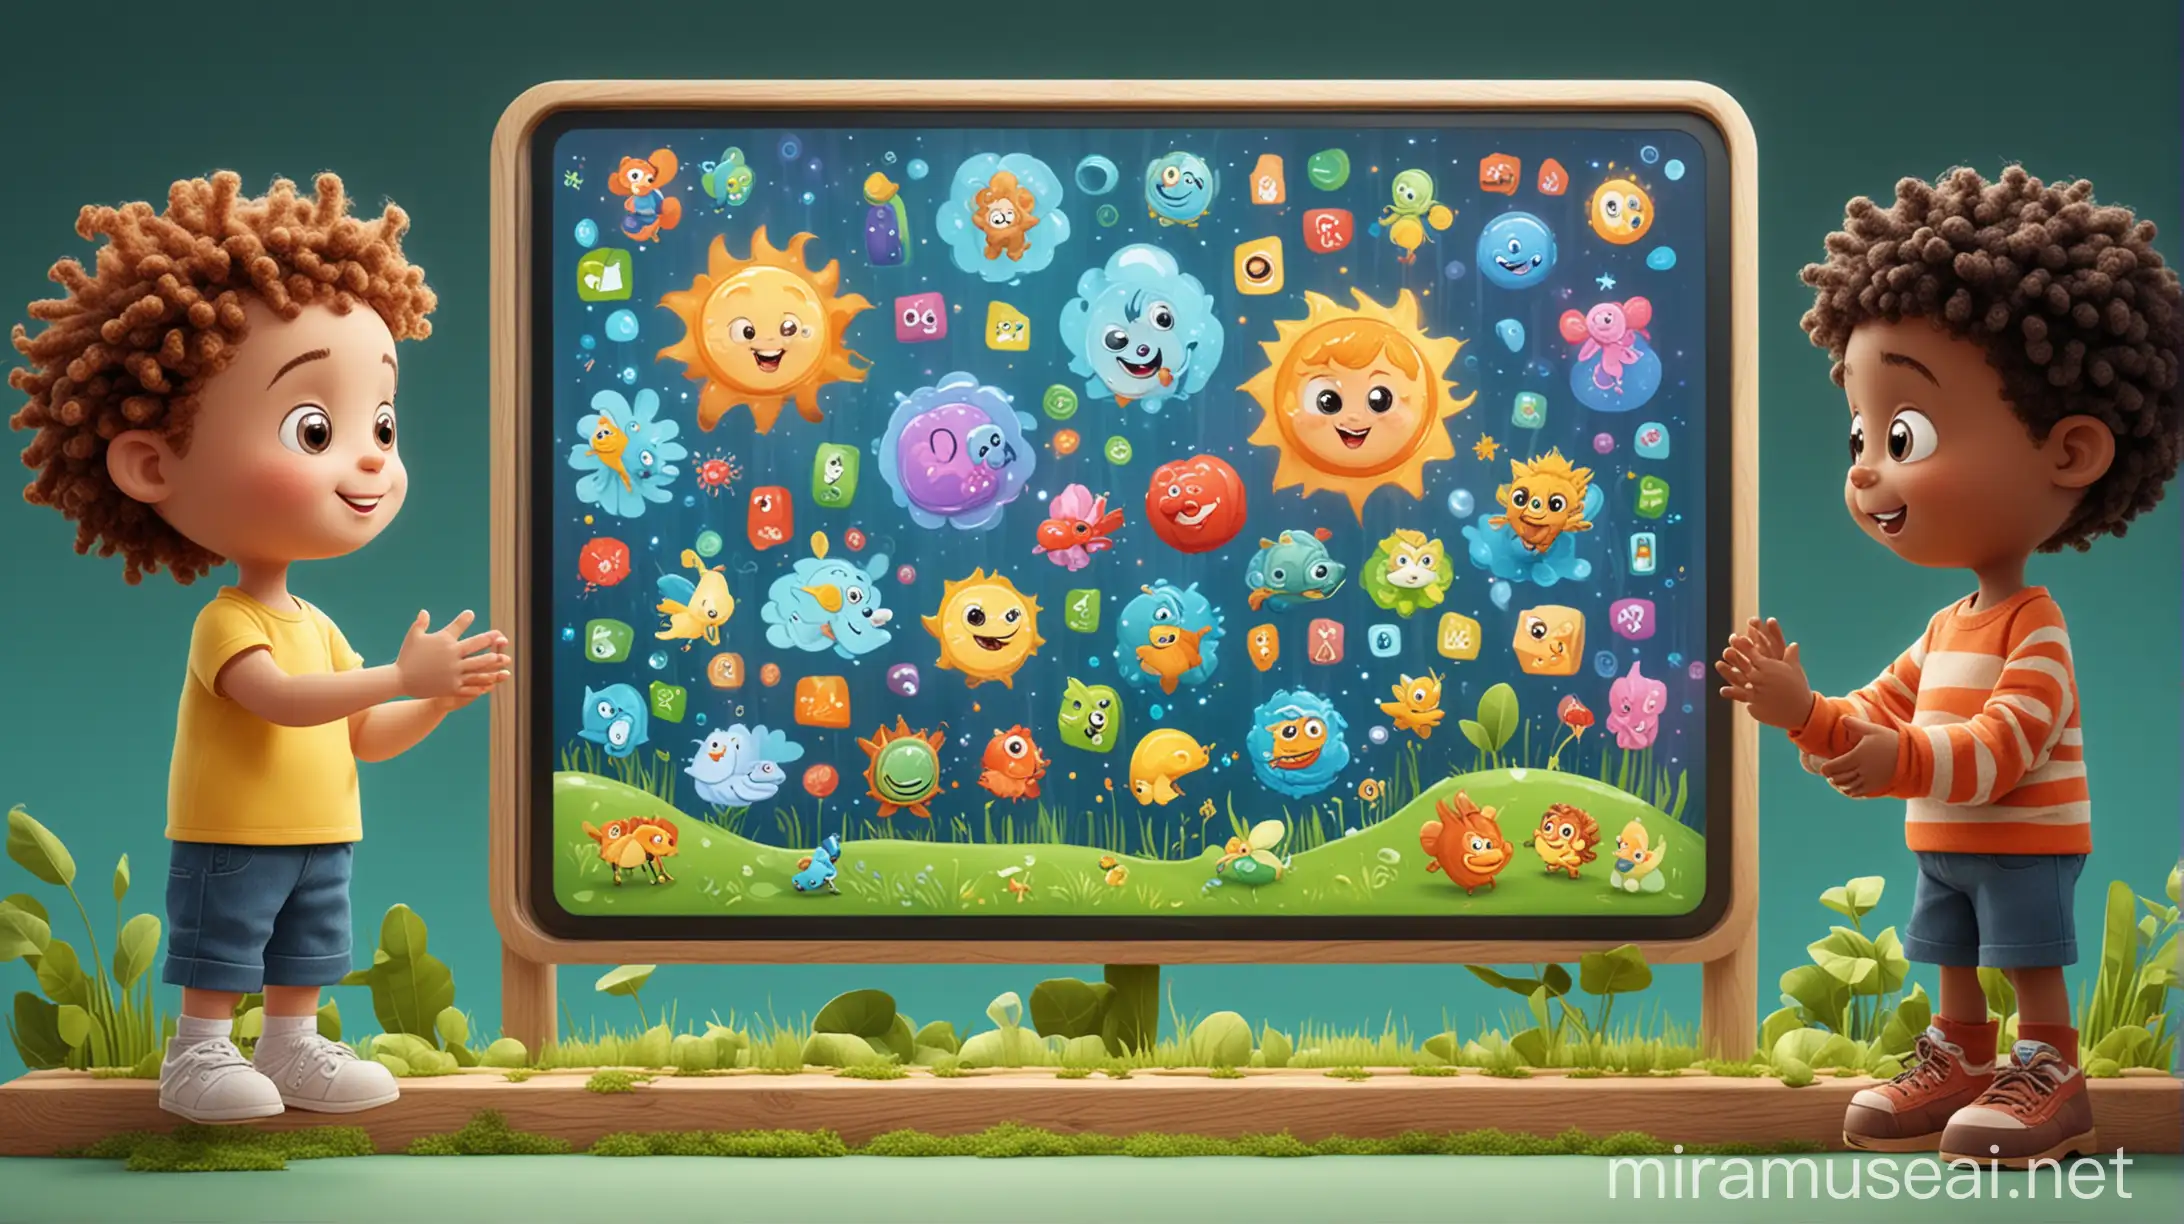 Яркая, мультяшная иллюстрация интерактивной сенсорной панели с приложением экоан для детей 3-5 лет. На экране милые персонажи играют в образовательные игры